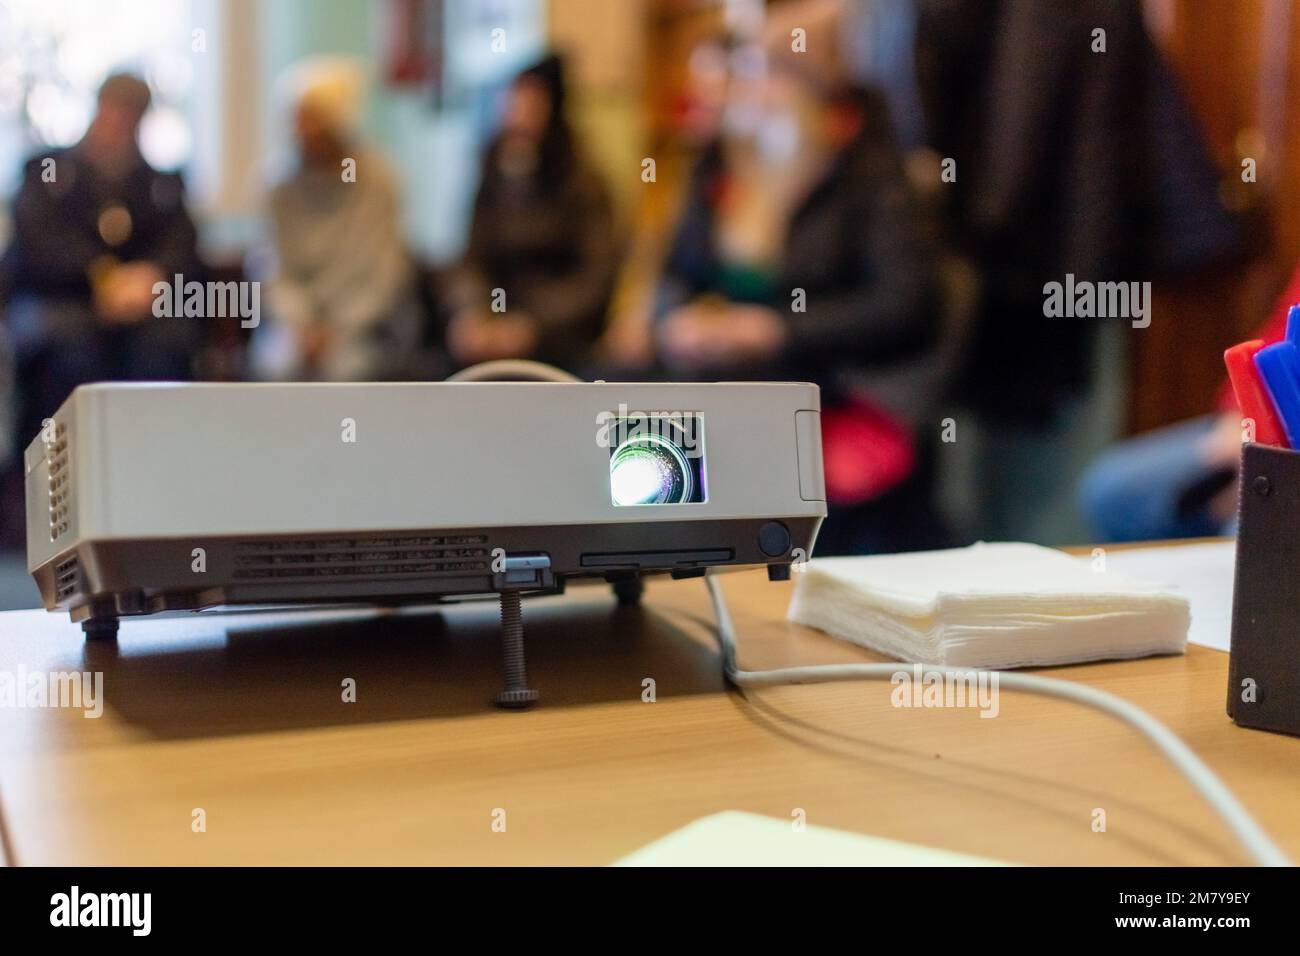 Projektor für Videopräsentationen auf dem Tisch Nahaufnahme des verschwommenen Hintergrunds des Klassenzimmers mit verschwommenen Silhouetten von Personen Stockfoto